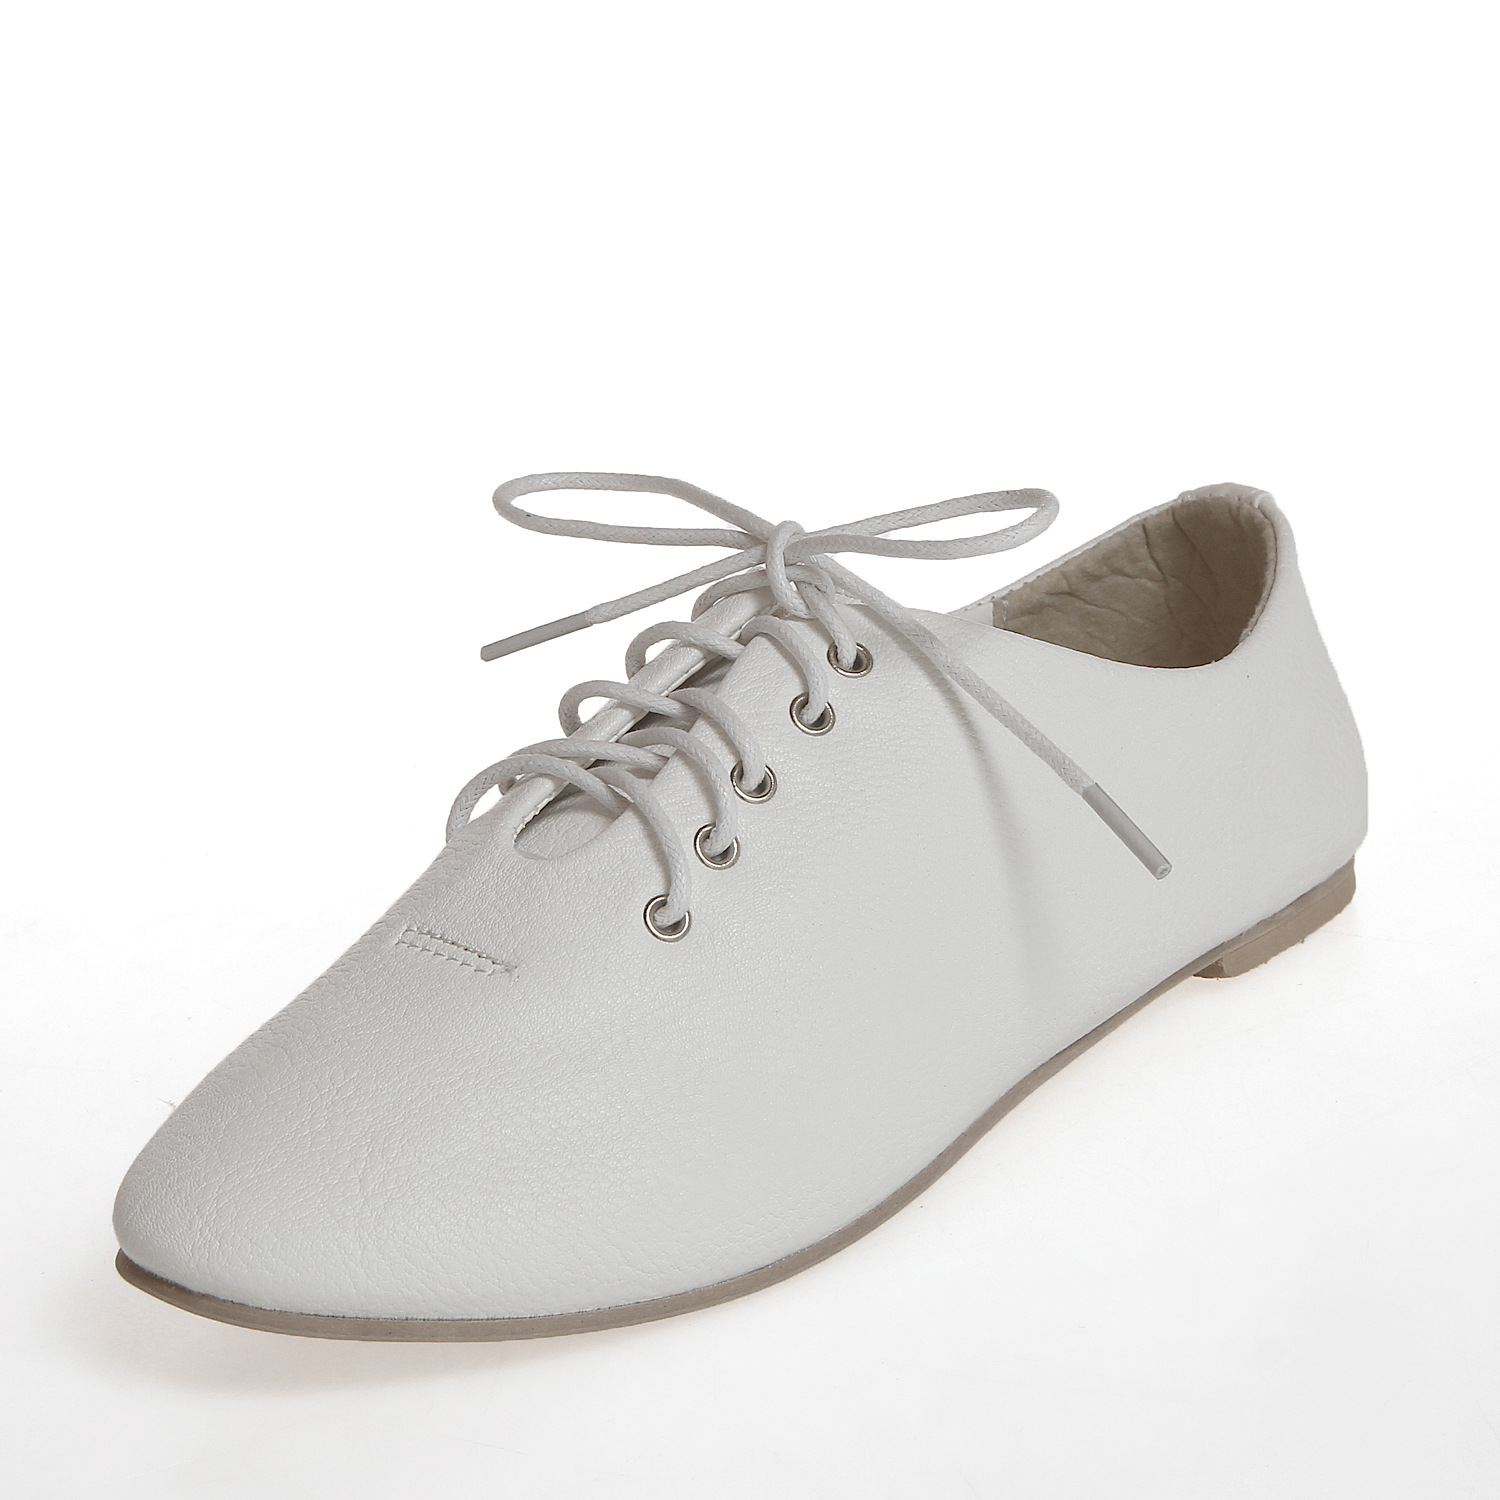 全国招商免费代理加盟淘宝创业一件代发小白鞋